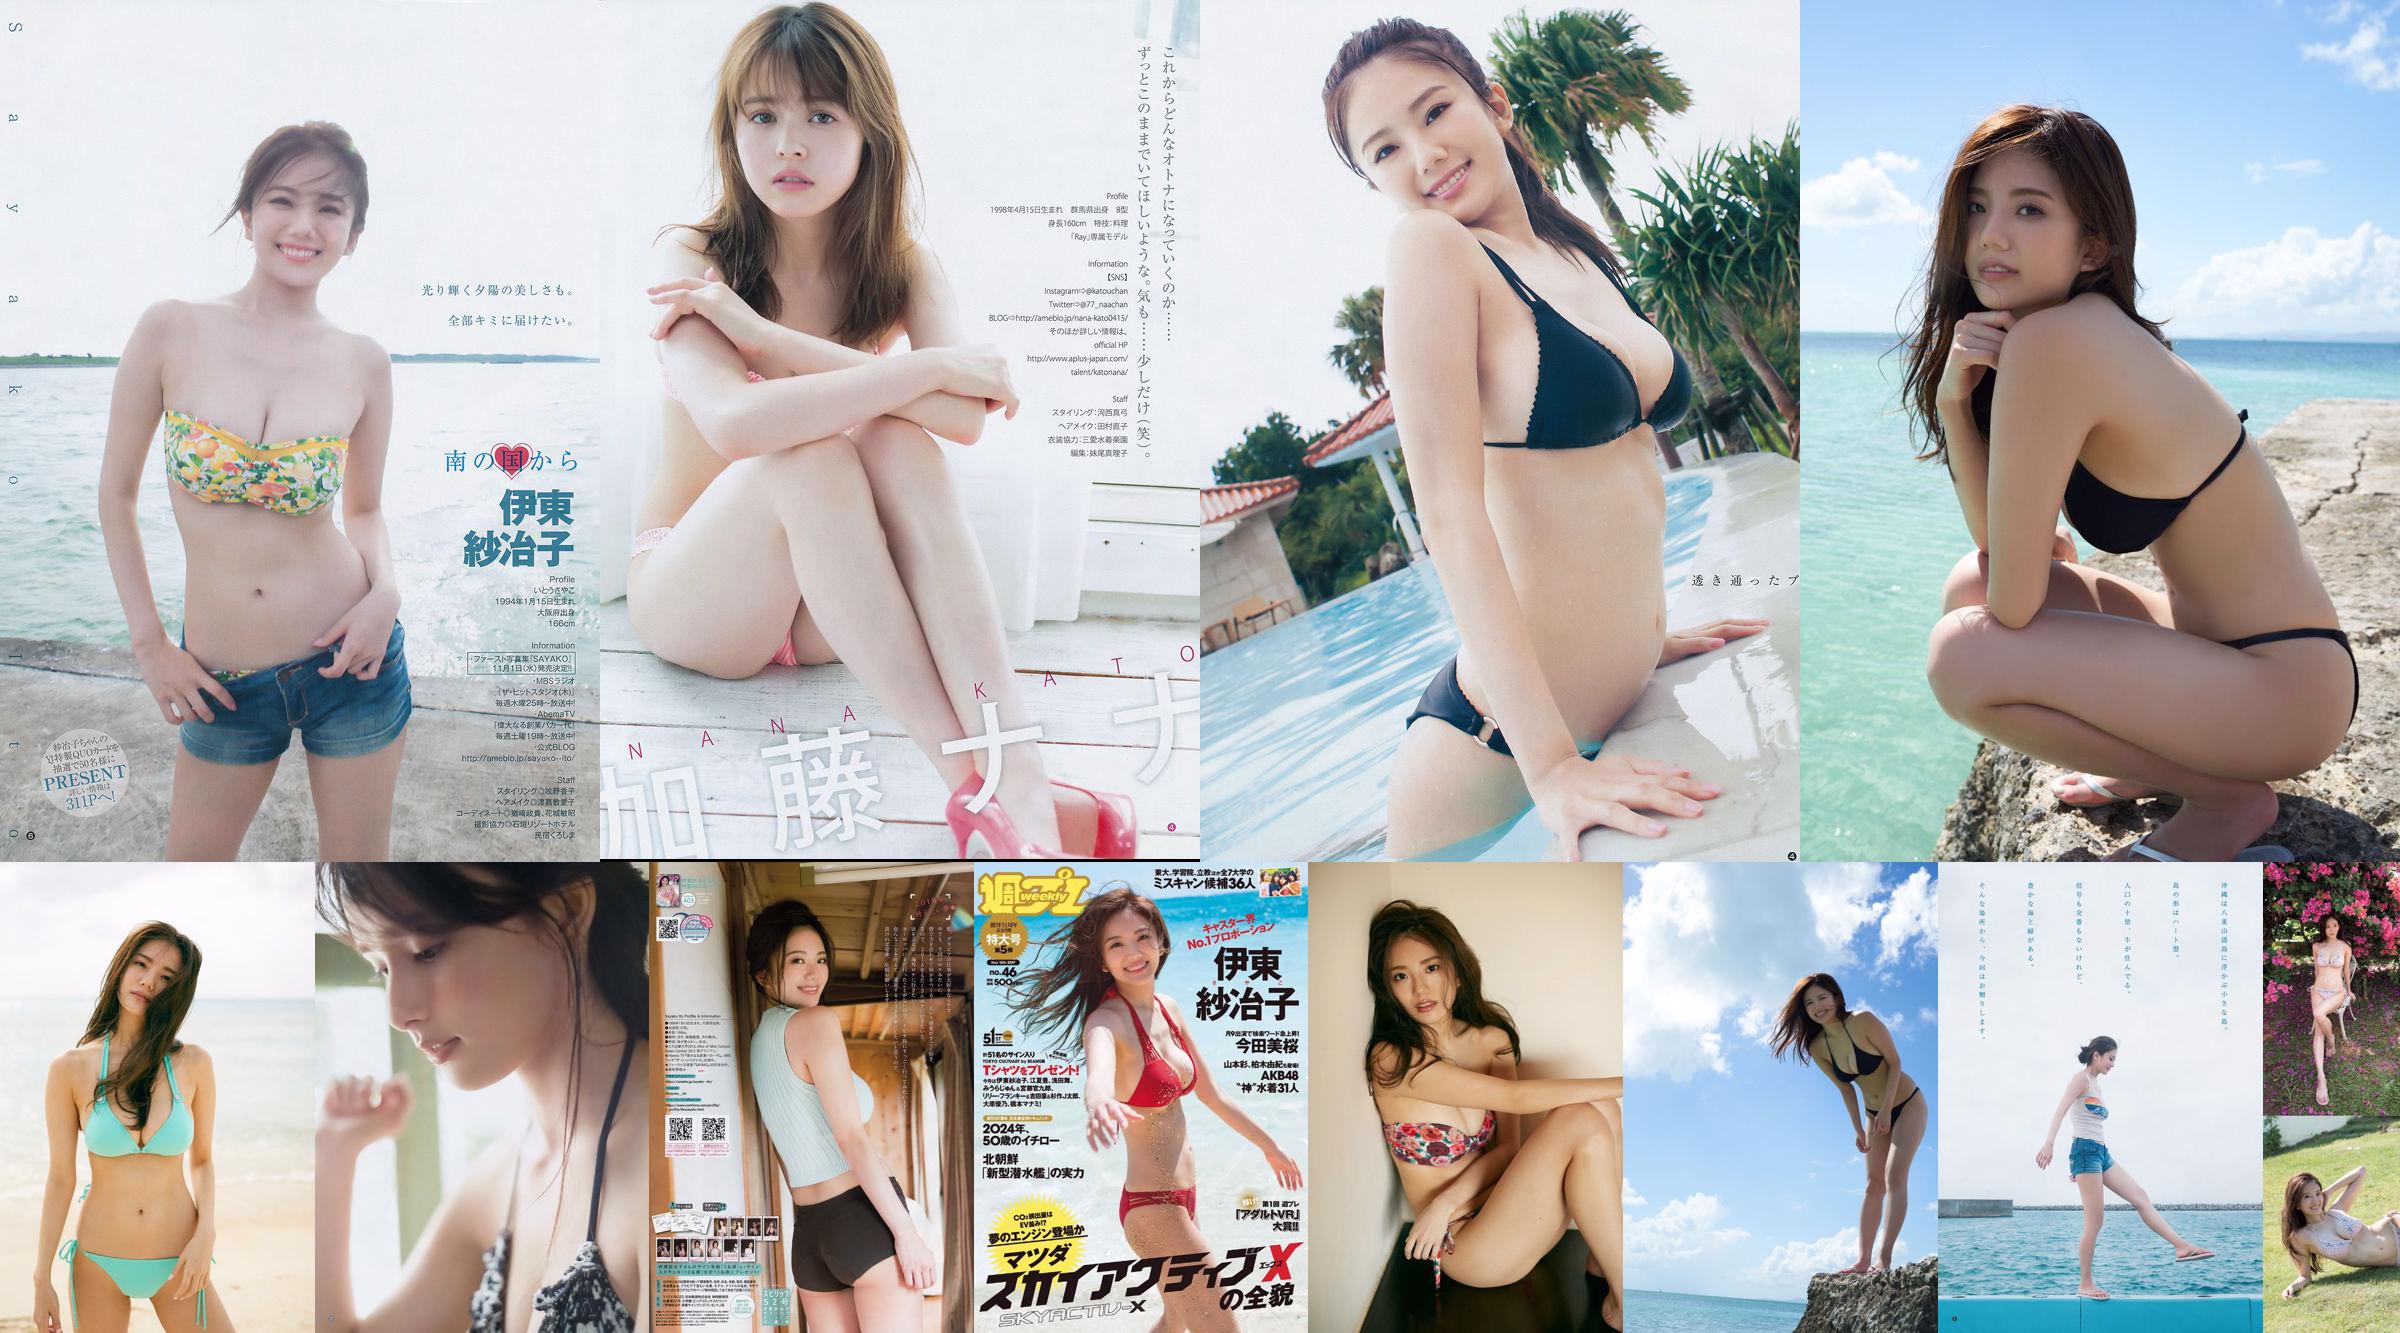 Ito Sayeko, Mima Reiko, Sugimoto Yumi, Sato Reina, Yoshiki りさ Toyama Akiko, Naninao [นิตยสารรายสัปดาห์ฉบับที่ 36] No.91e513 หน้า 4